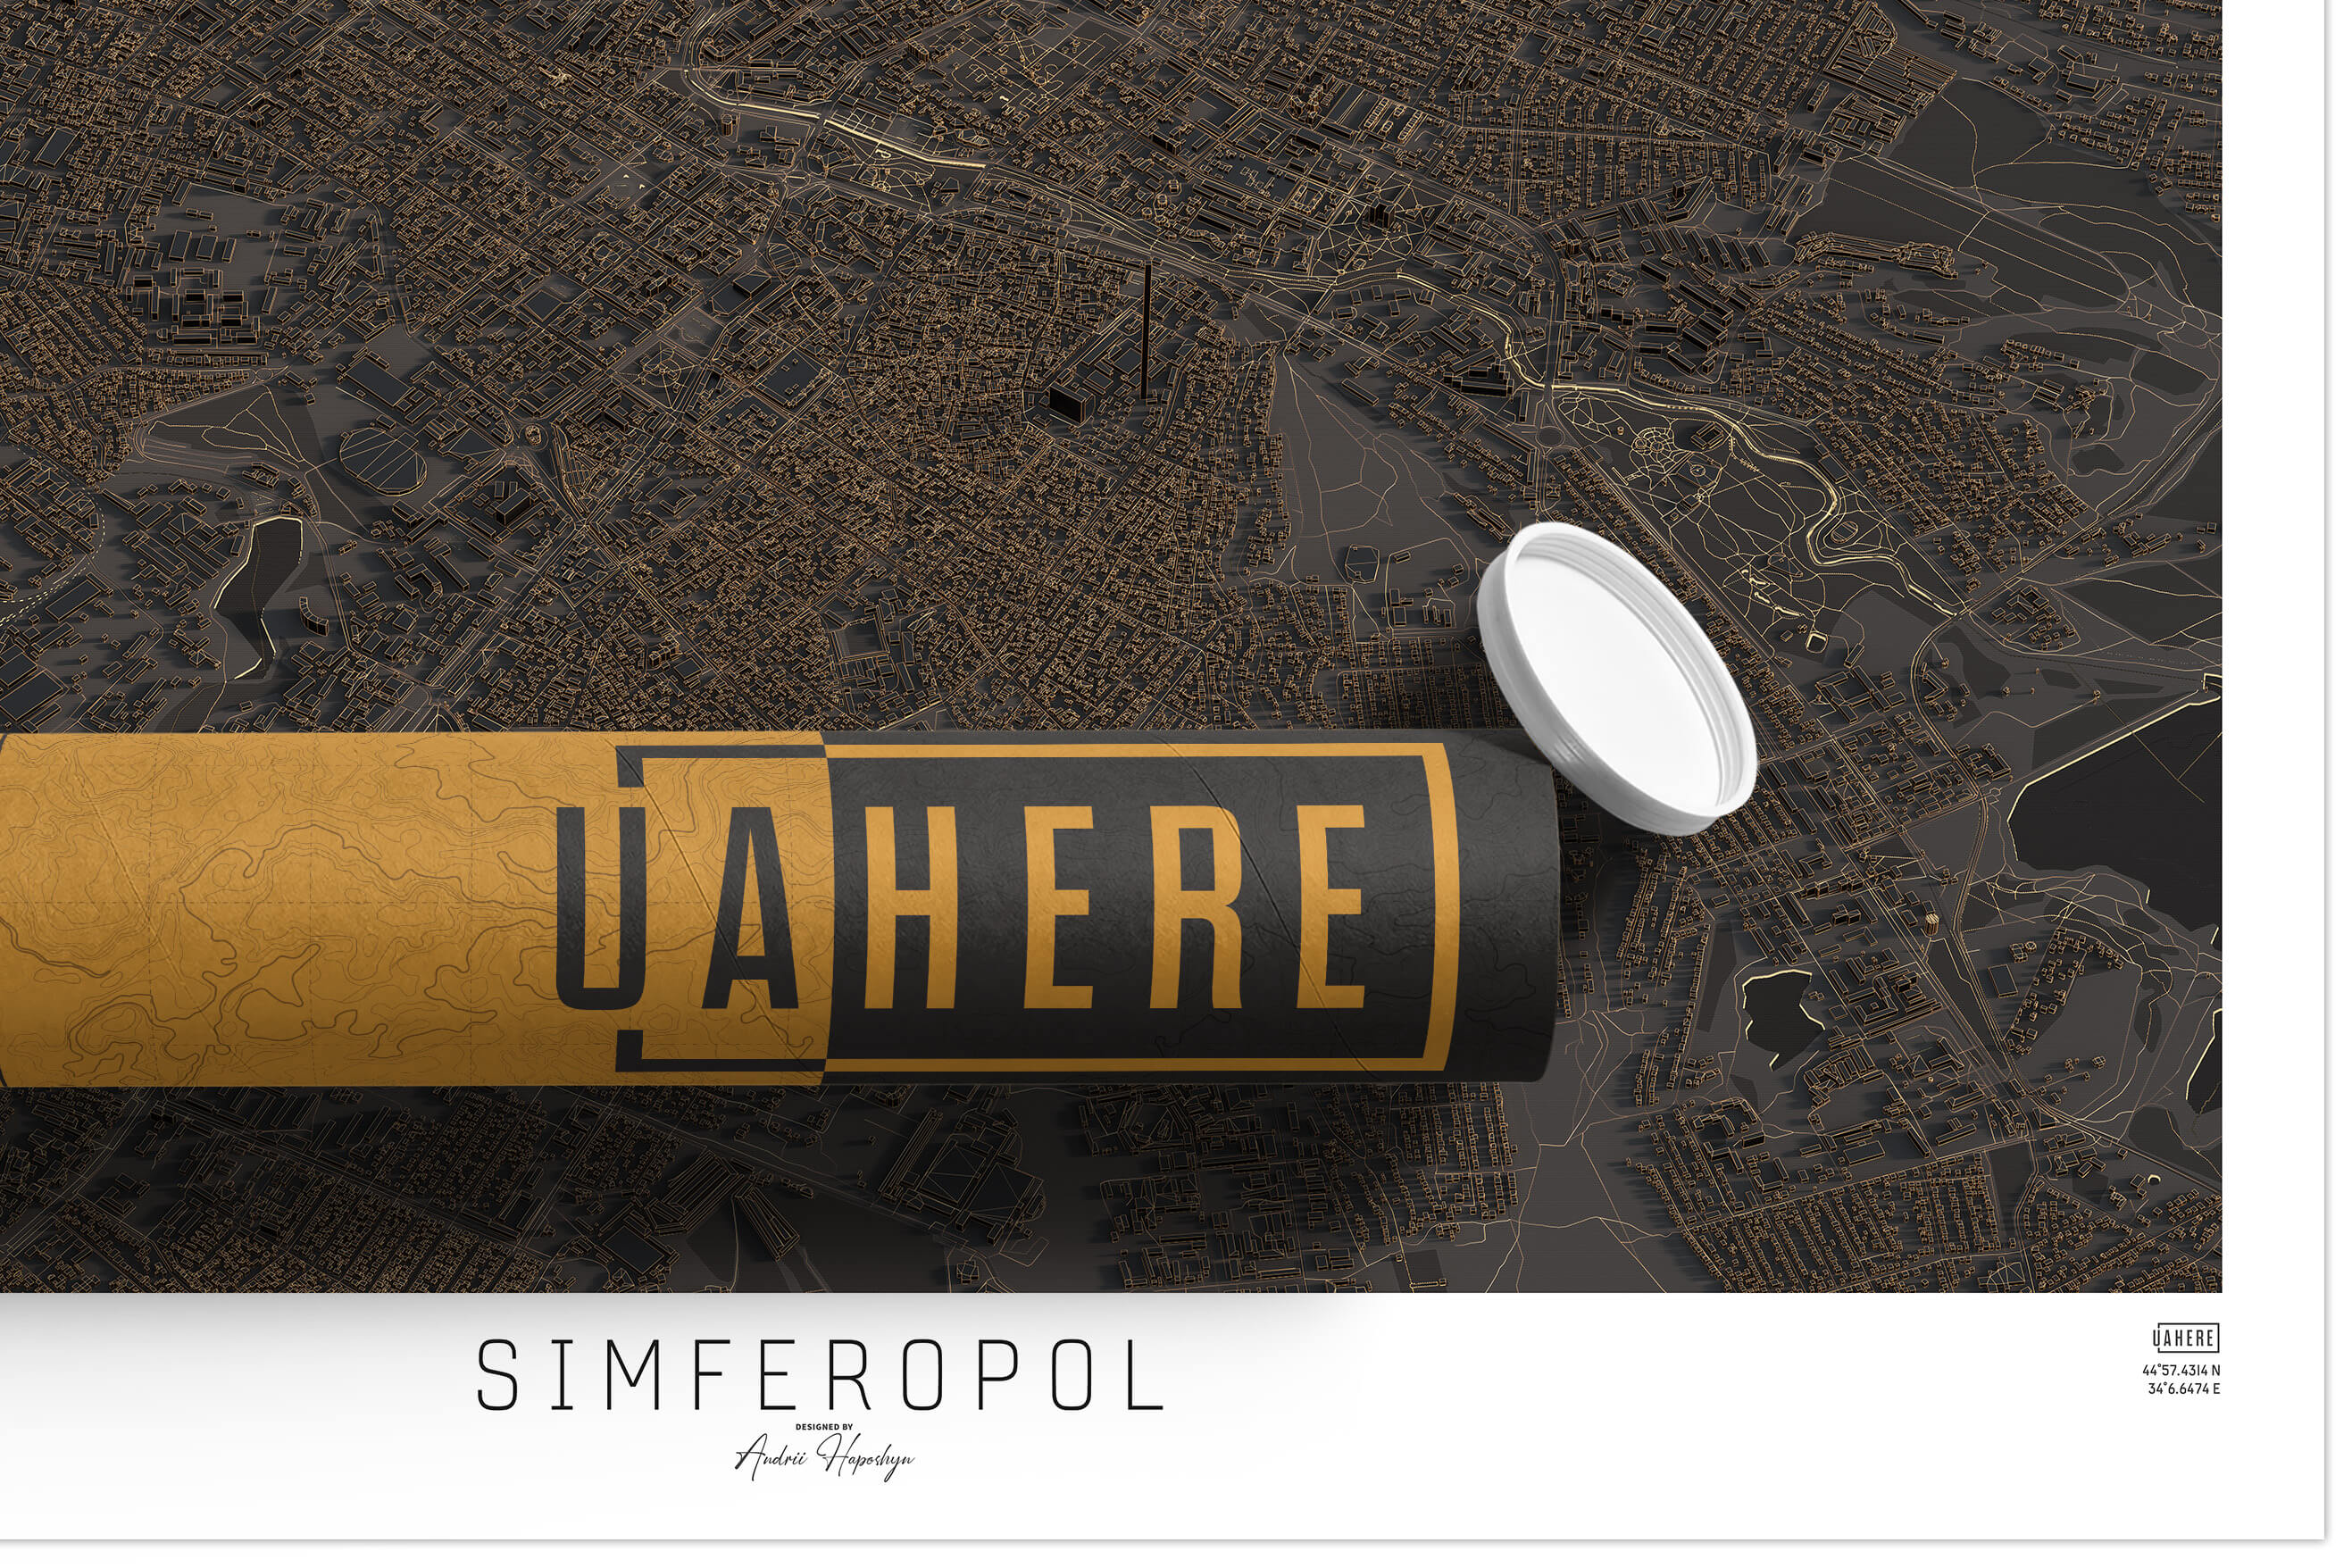 Брендований тубус UAHERE та надрукована стільна темна 3д мапа Сімферополю